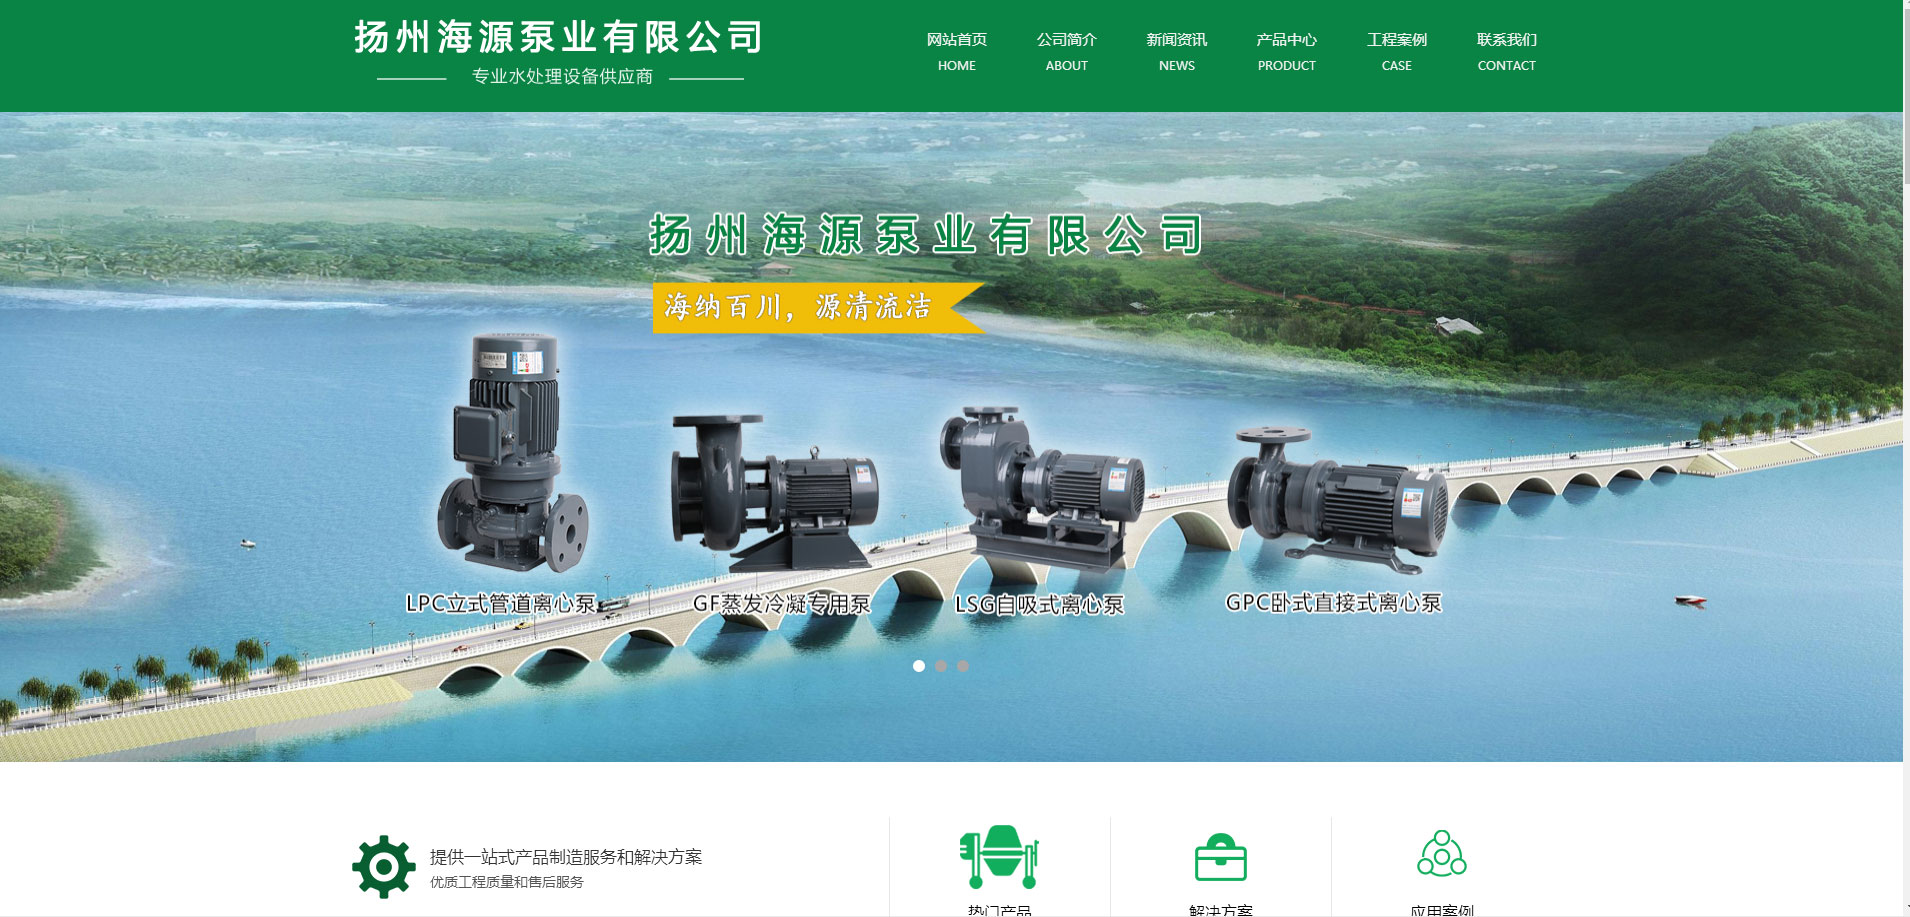 扬州海源泵业有限公司